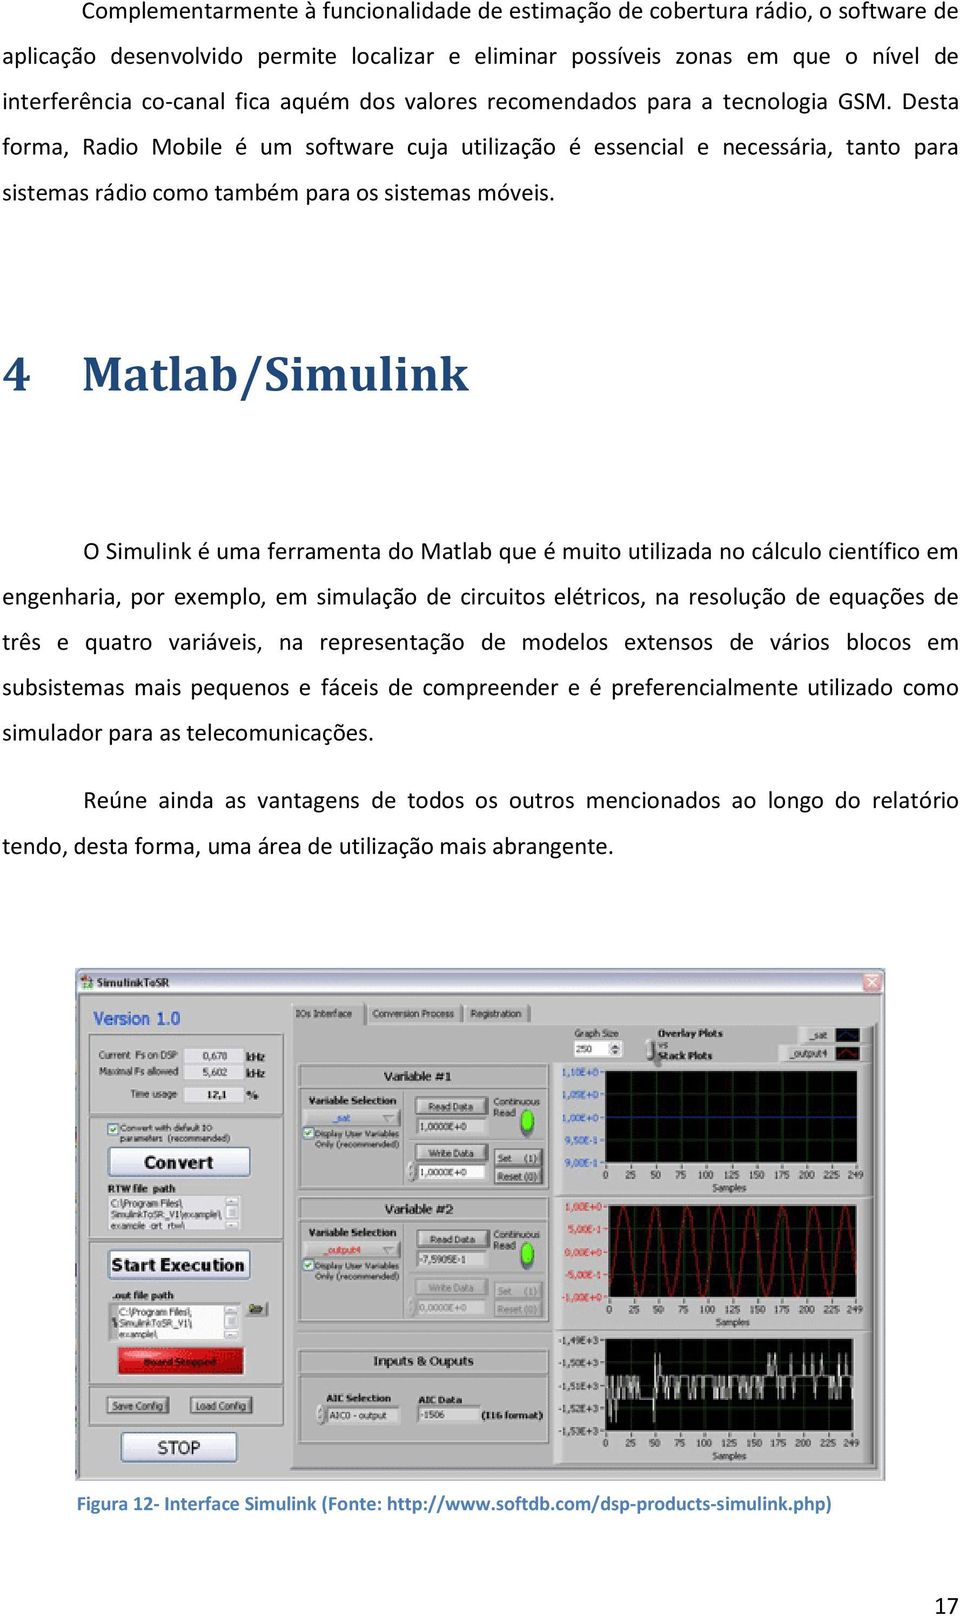 4 Matlab/Simulink O Simulink é uma ferramenta do Matlab que é muito utilizada no cálculo científico em engenharia, por exemplo, em simulação de circuitos elétricos, na resolução de equações de três e